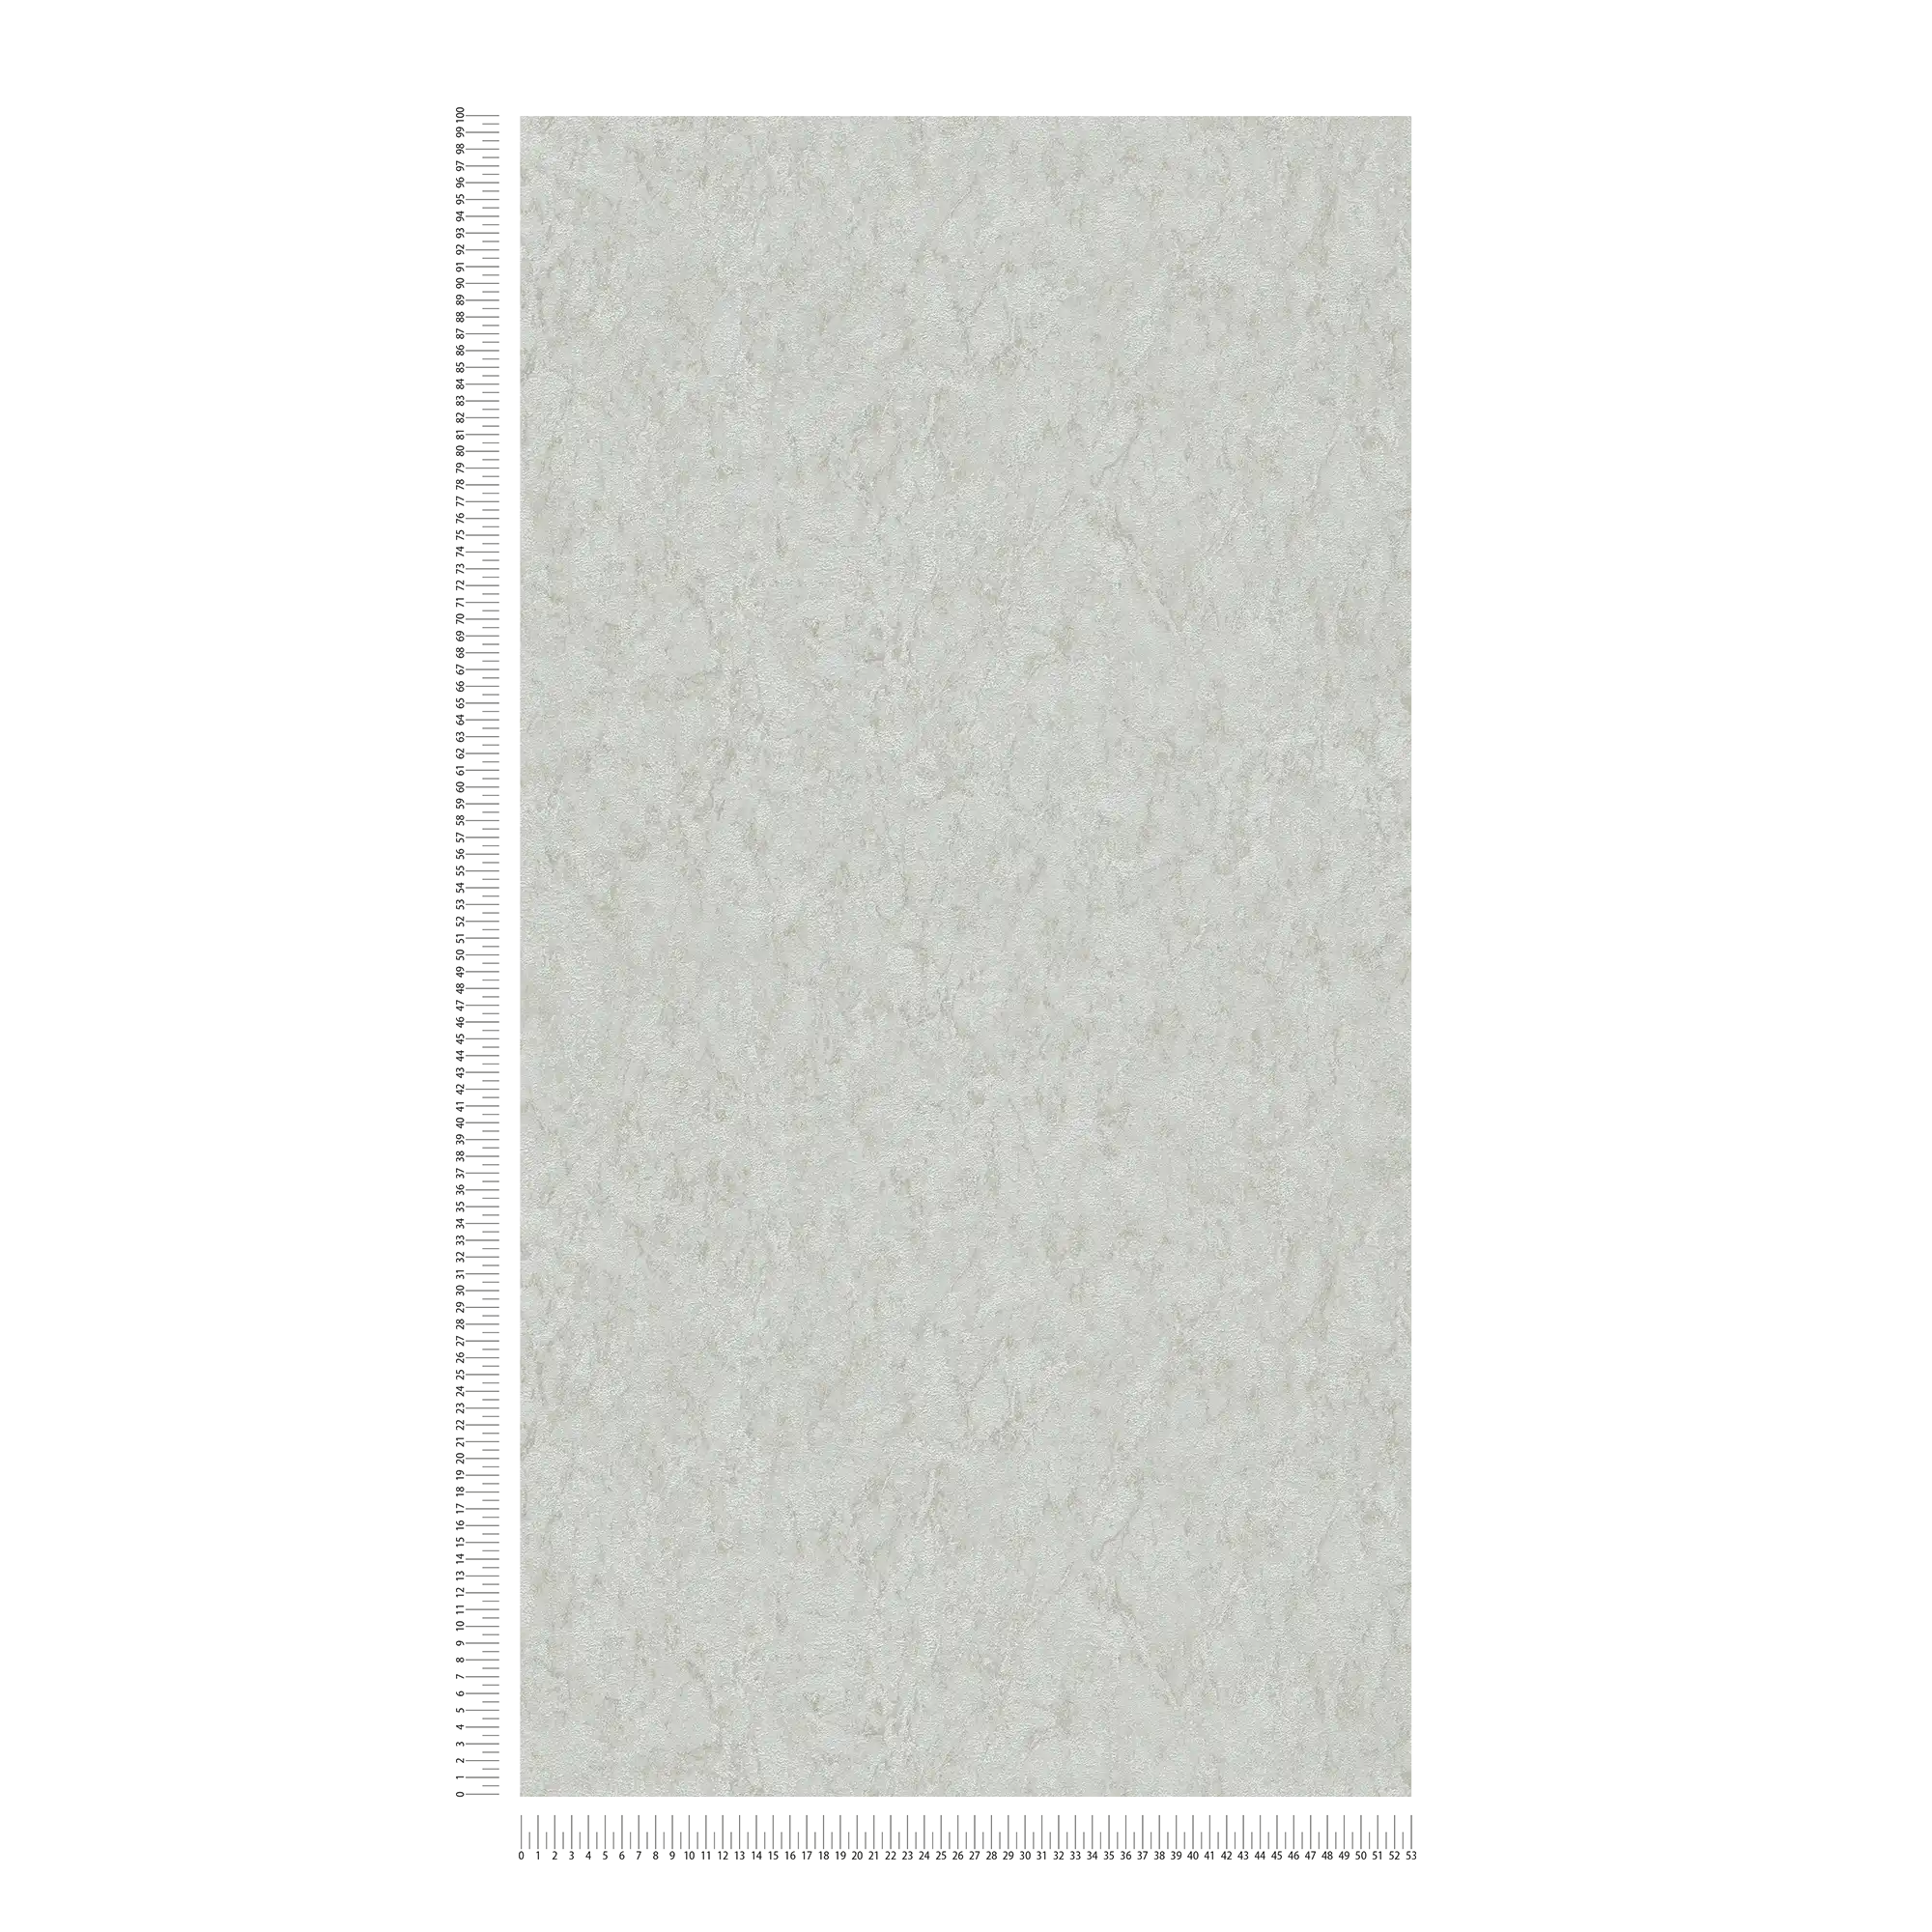             Papier peint uni avec effet texturé & dessin chiné - gris, beige
        